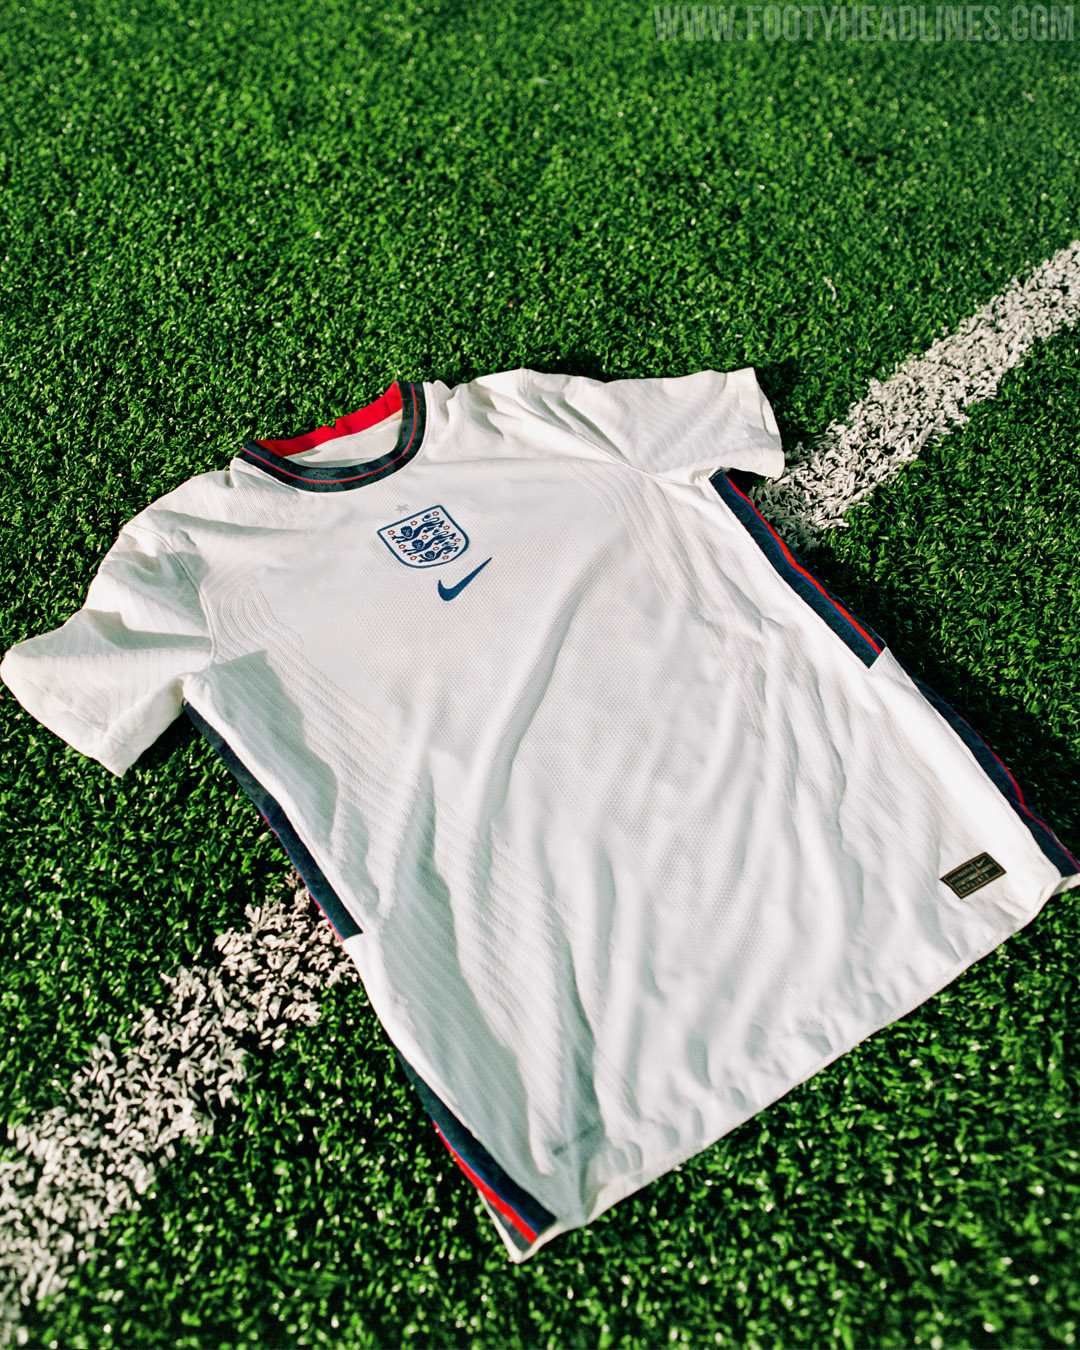 england-2020-home-kit